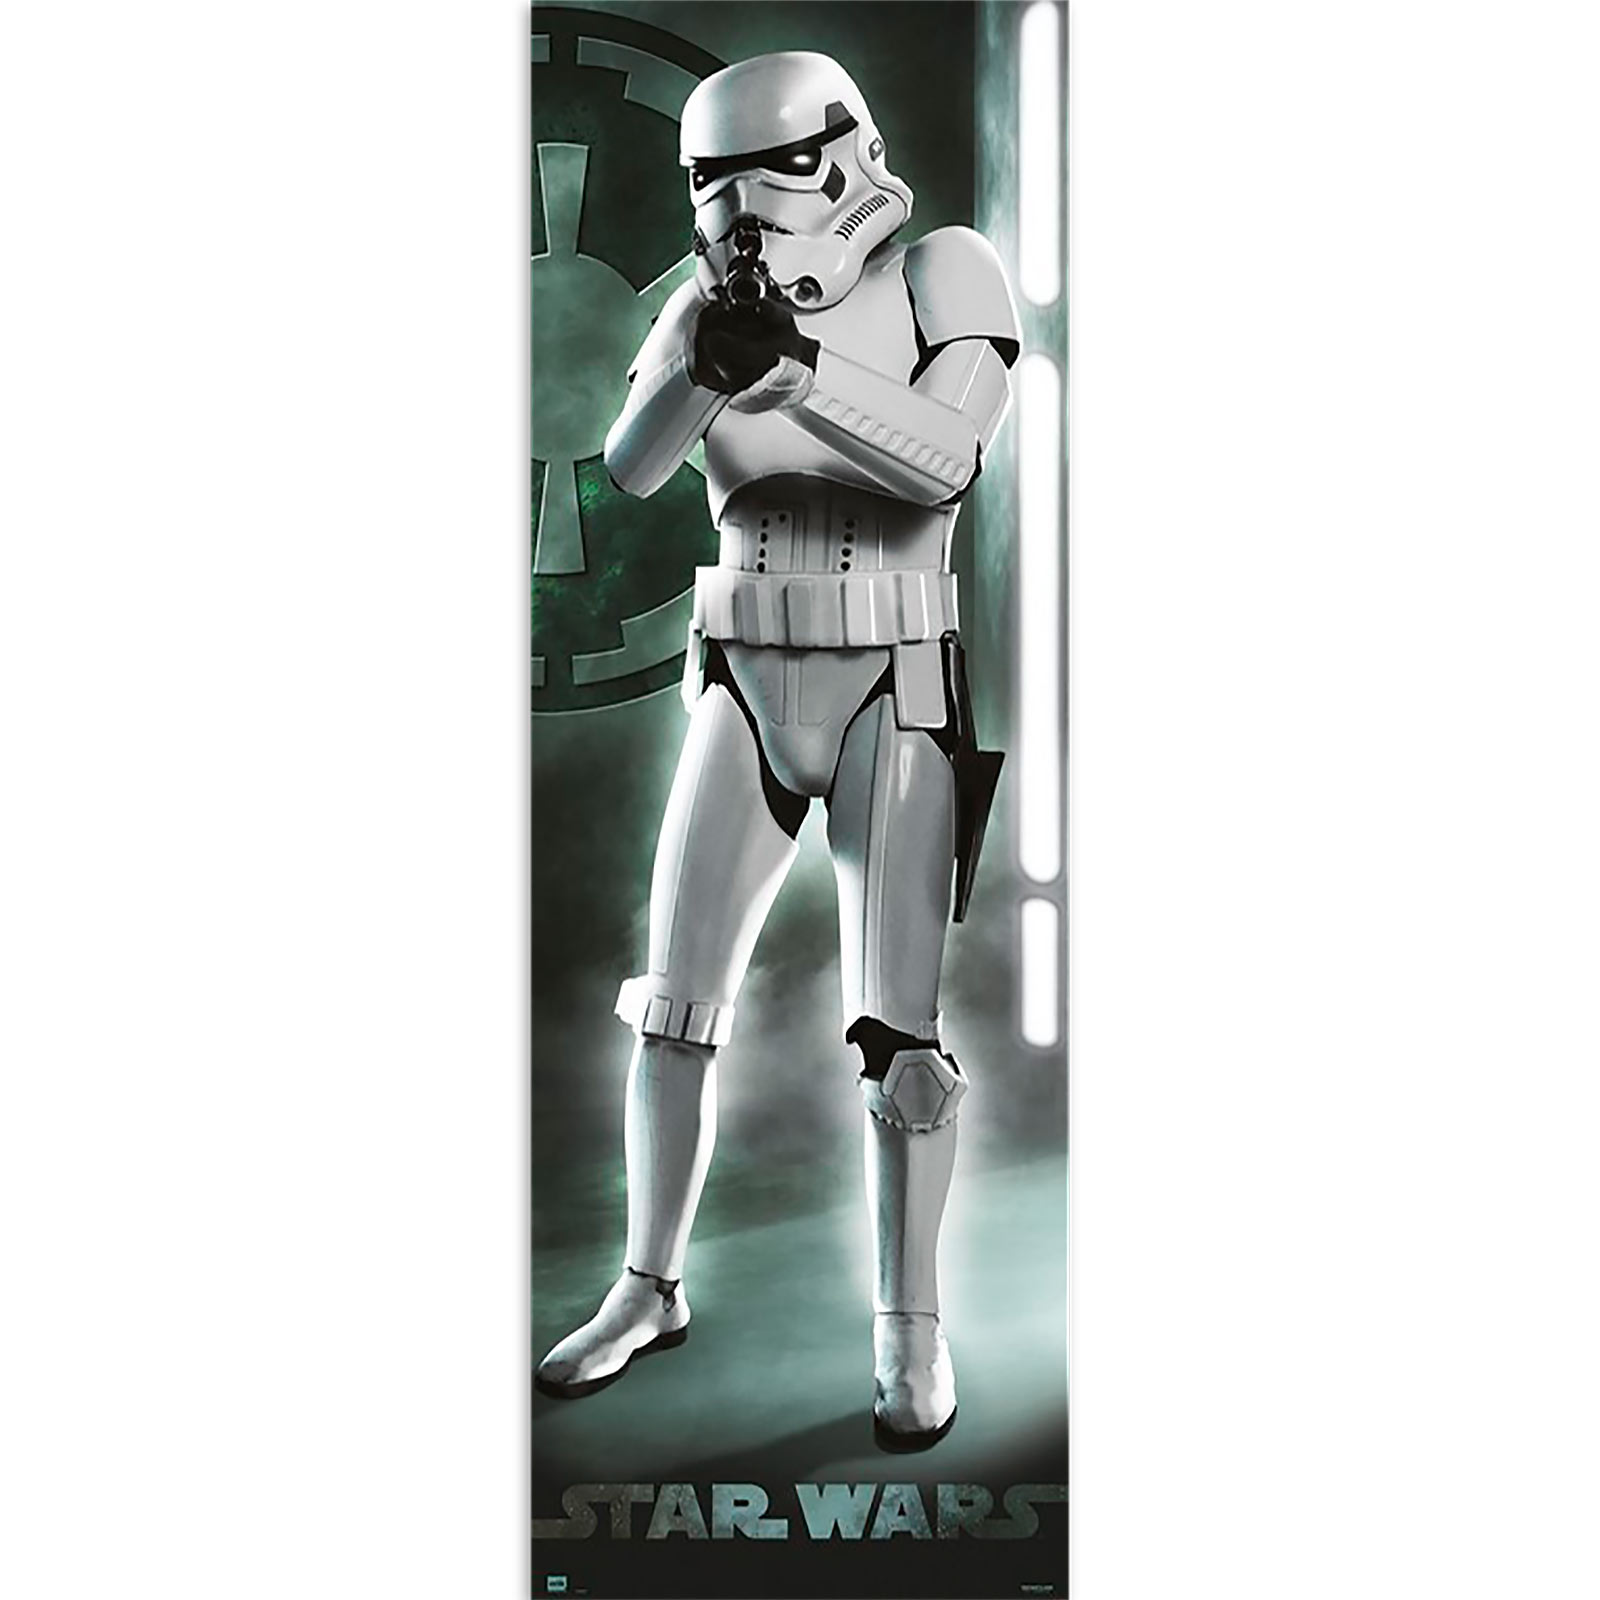 Star Wars - Stormtrooper Door Poster